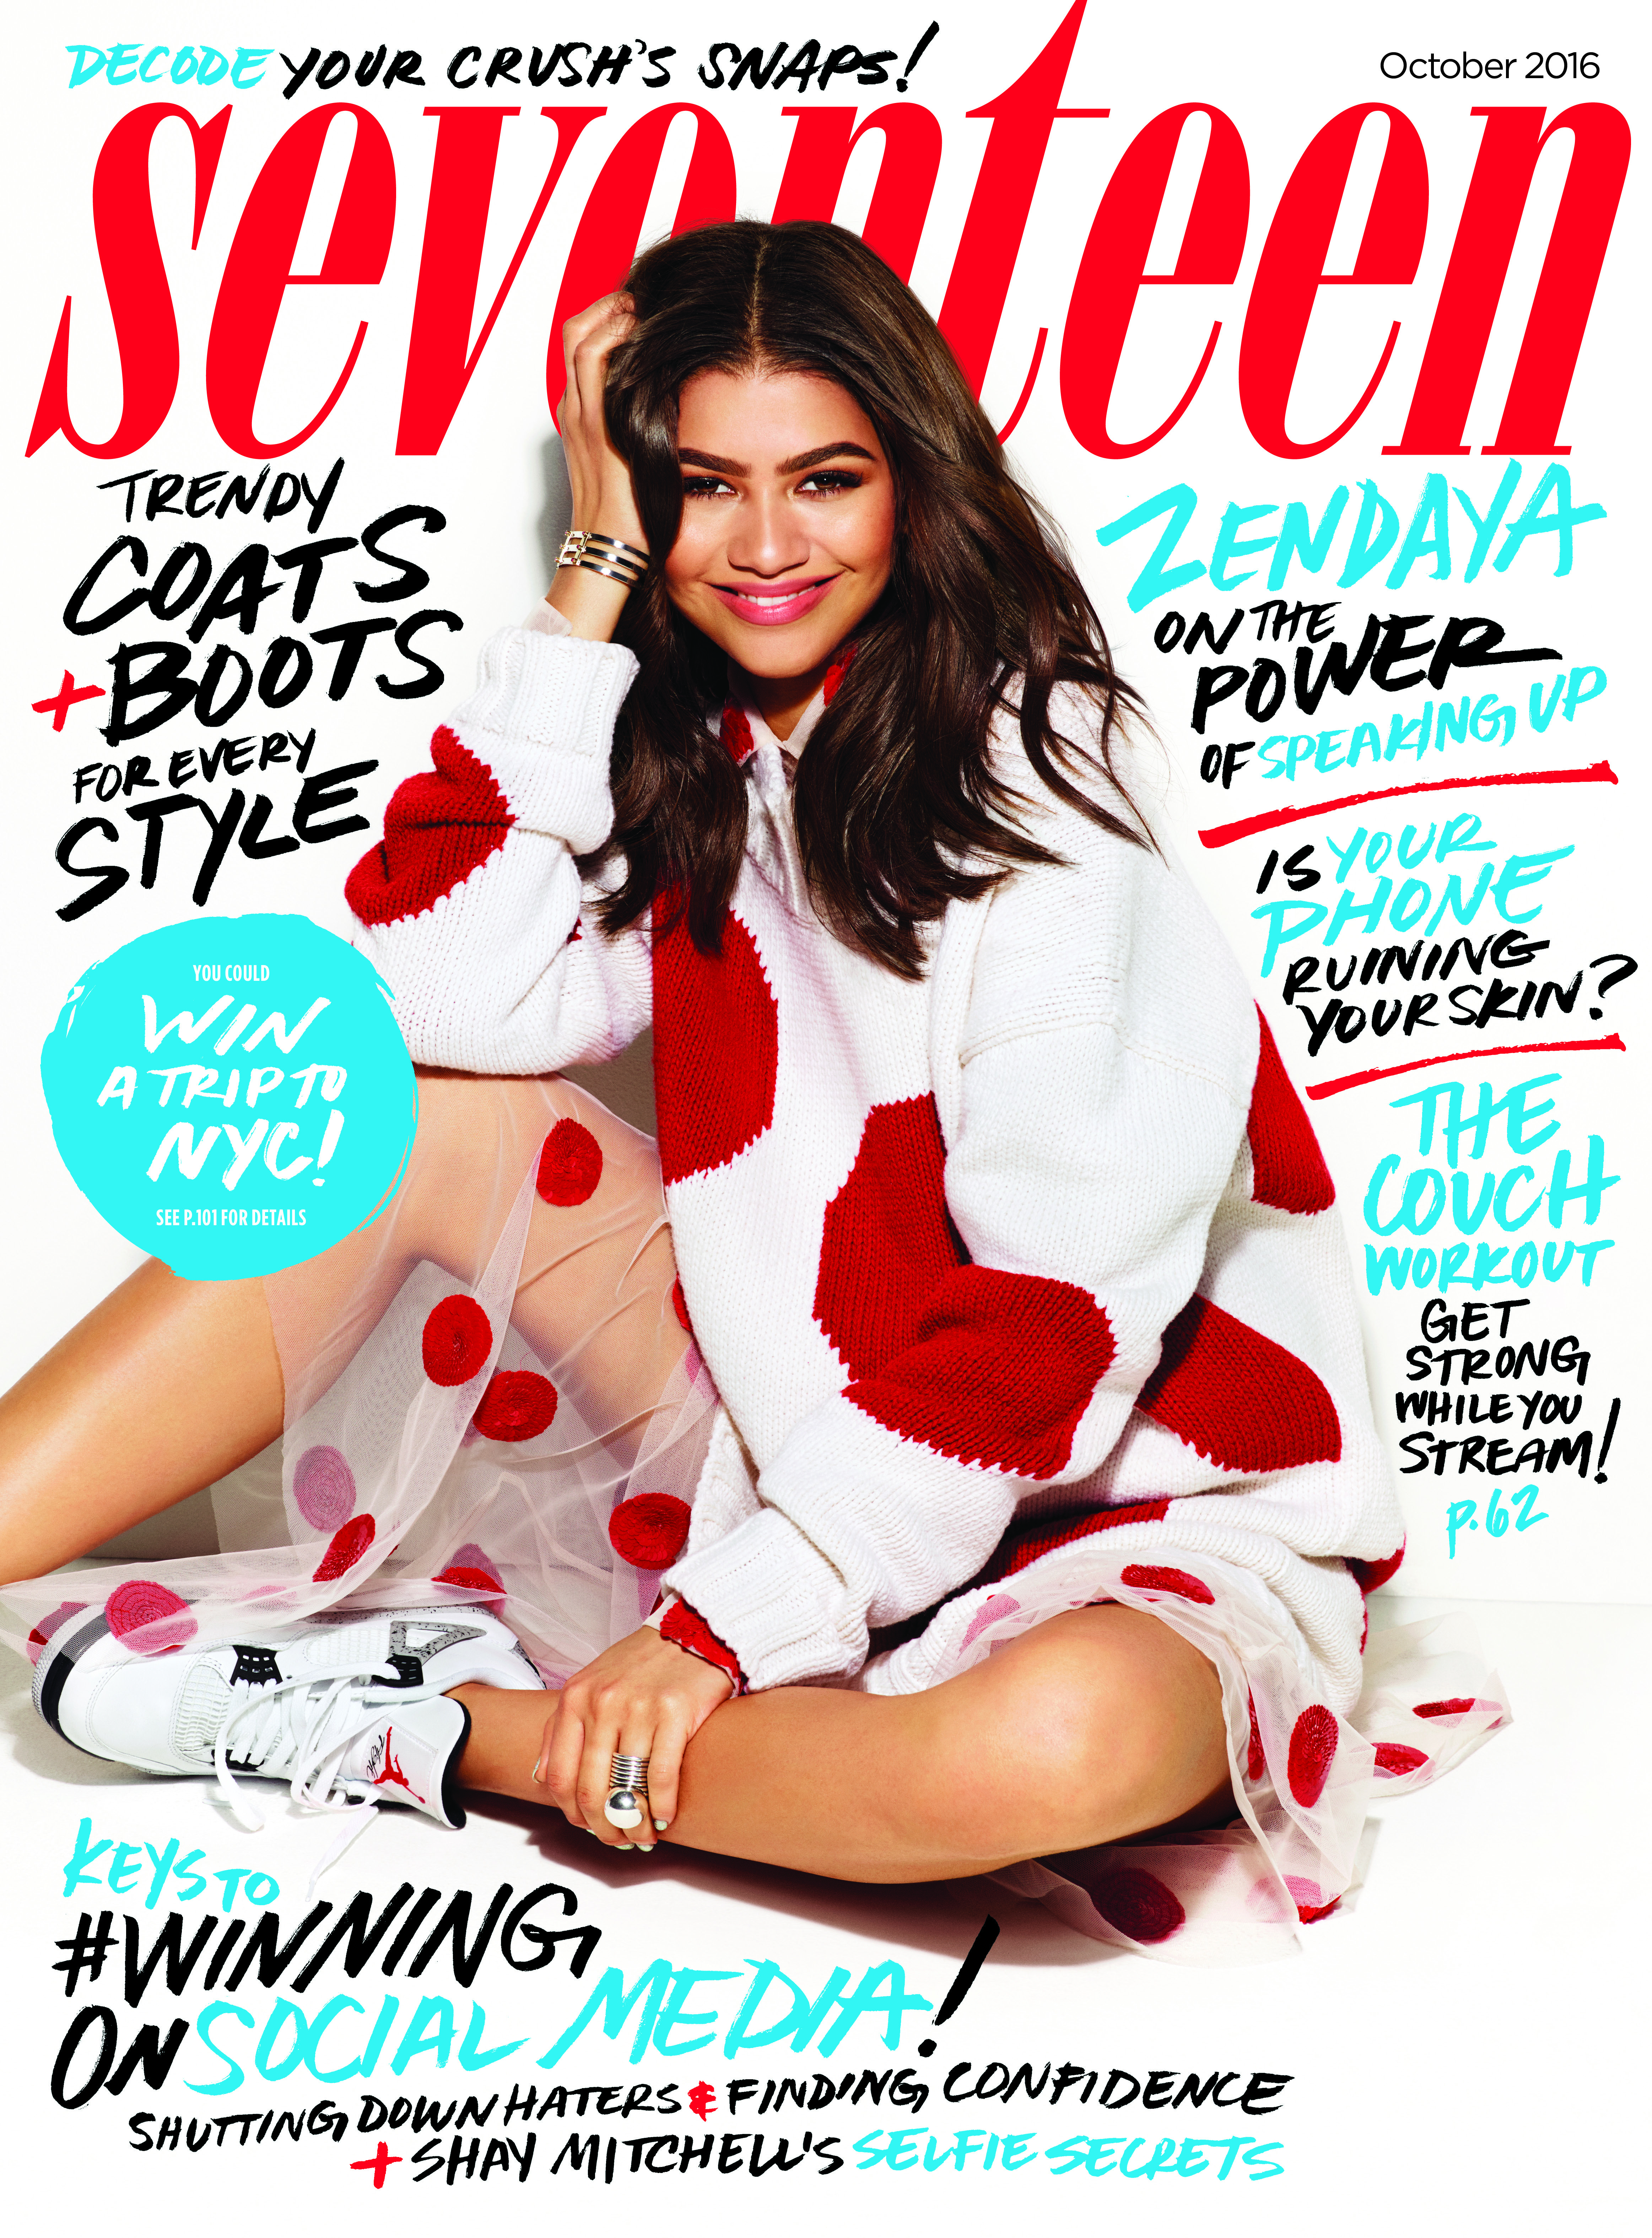 Zendaya covers Seventeen's October 2016 issue